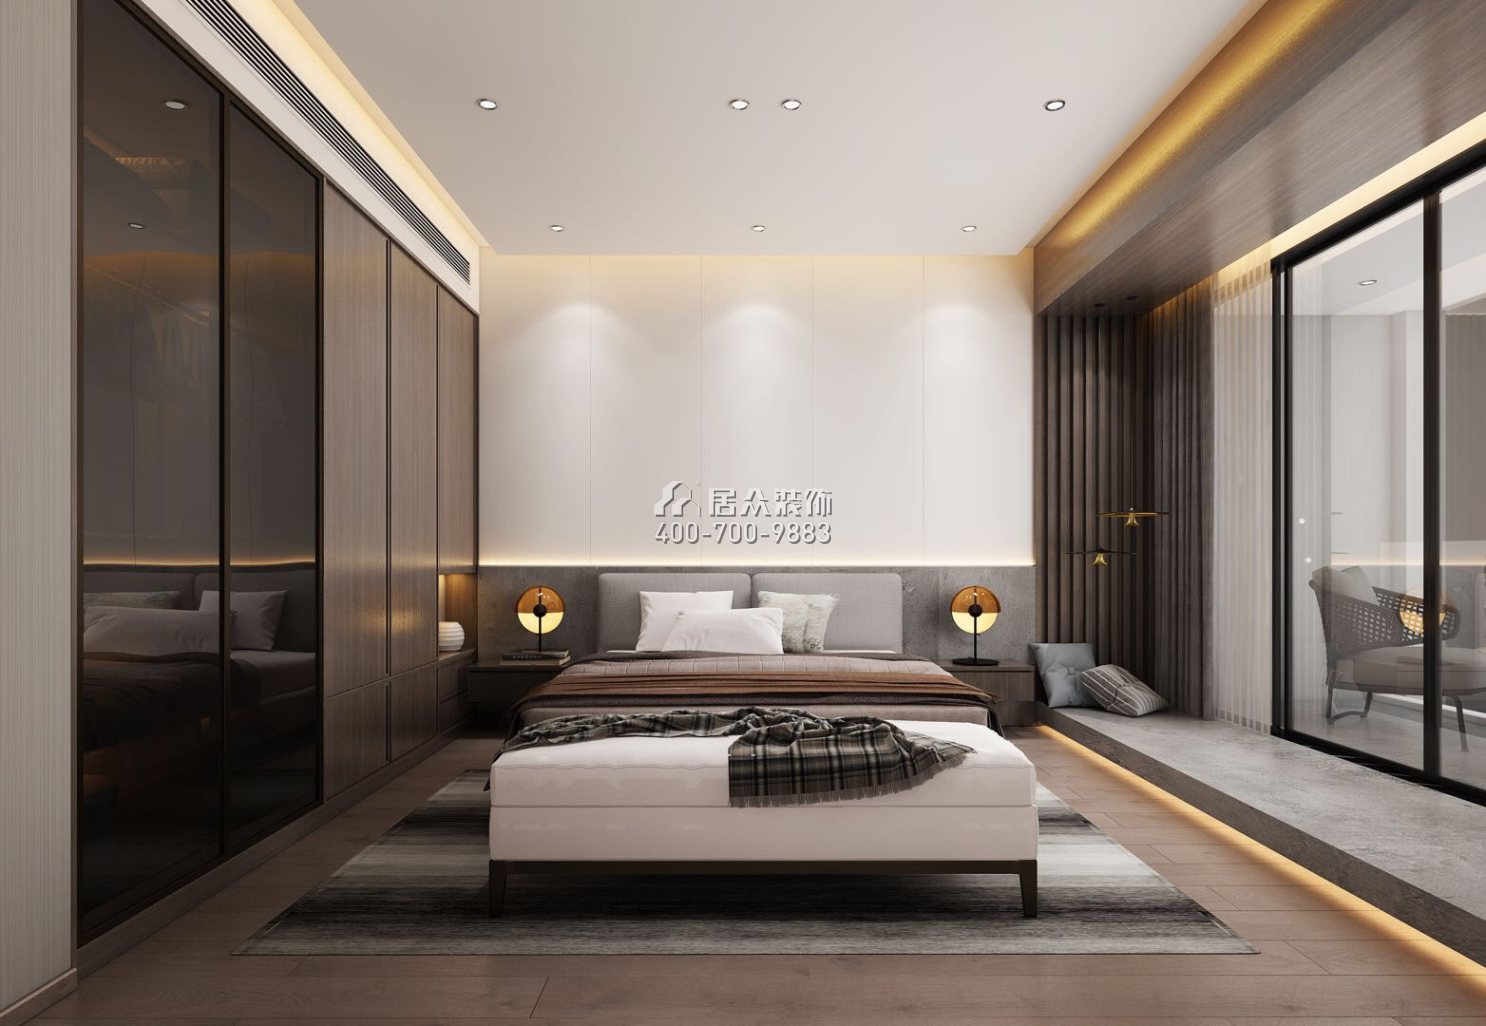 佳兆业城市广场190平方米现代简约风格复式户型卧室装修效果图